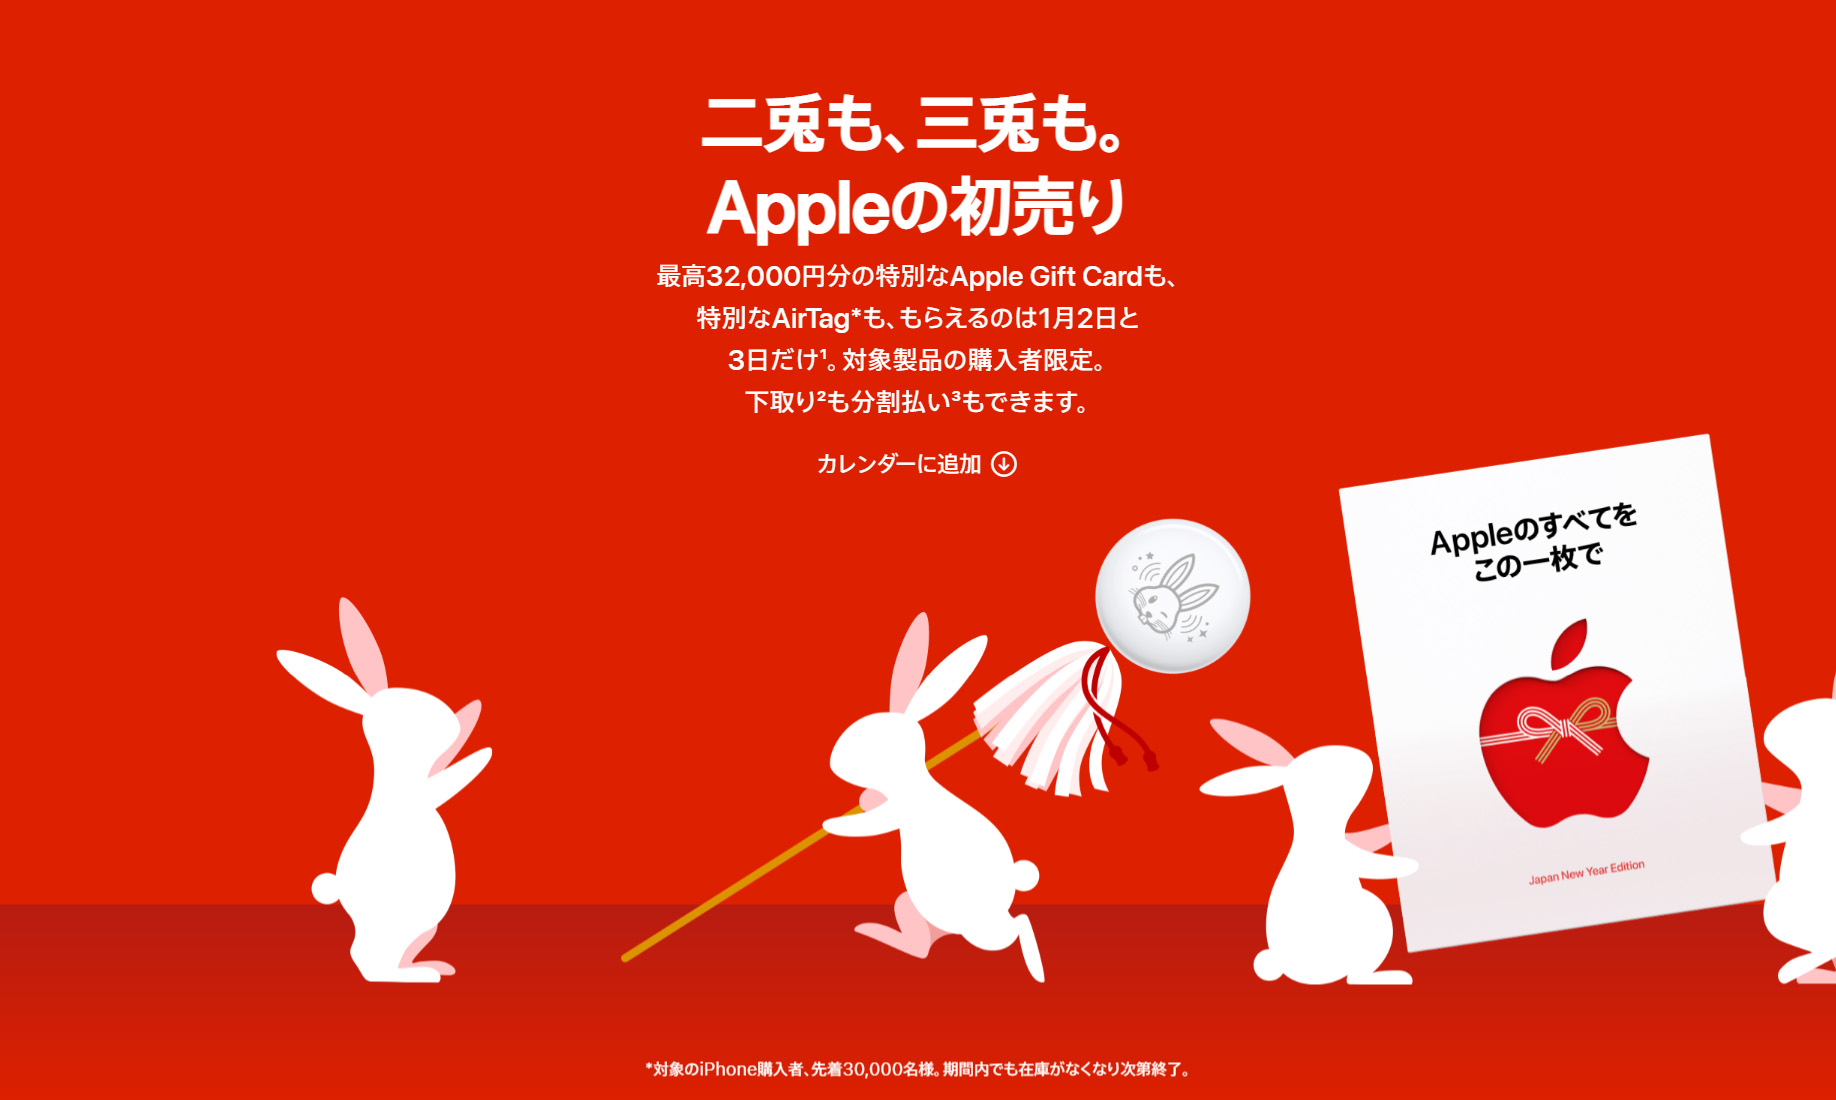 対象商品購入でApple Gift Cardがもらえる。「Appleの初売り」が1月2日